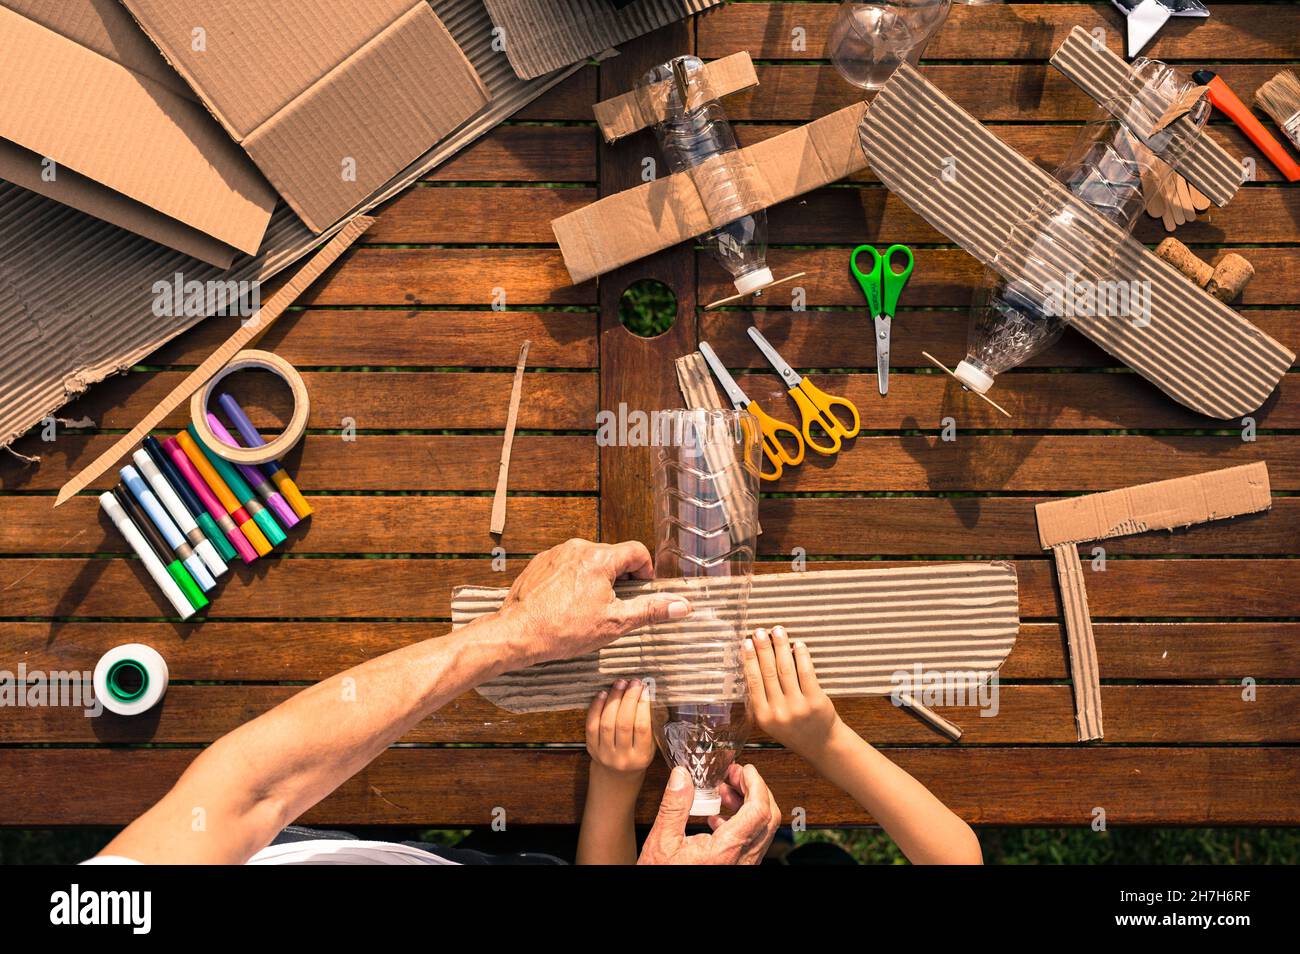 Großvater und Enkel bauen Flugzeuge aus recyceltem Material (Pappe, PVC-Flaschen, Holz). Arbeitsideen Kreislaufwirtschaft, Recycling, Umwelt Stockfoto